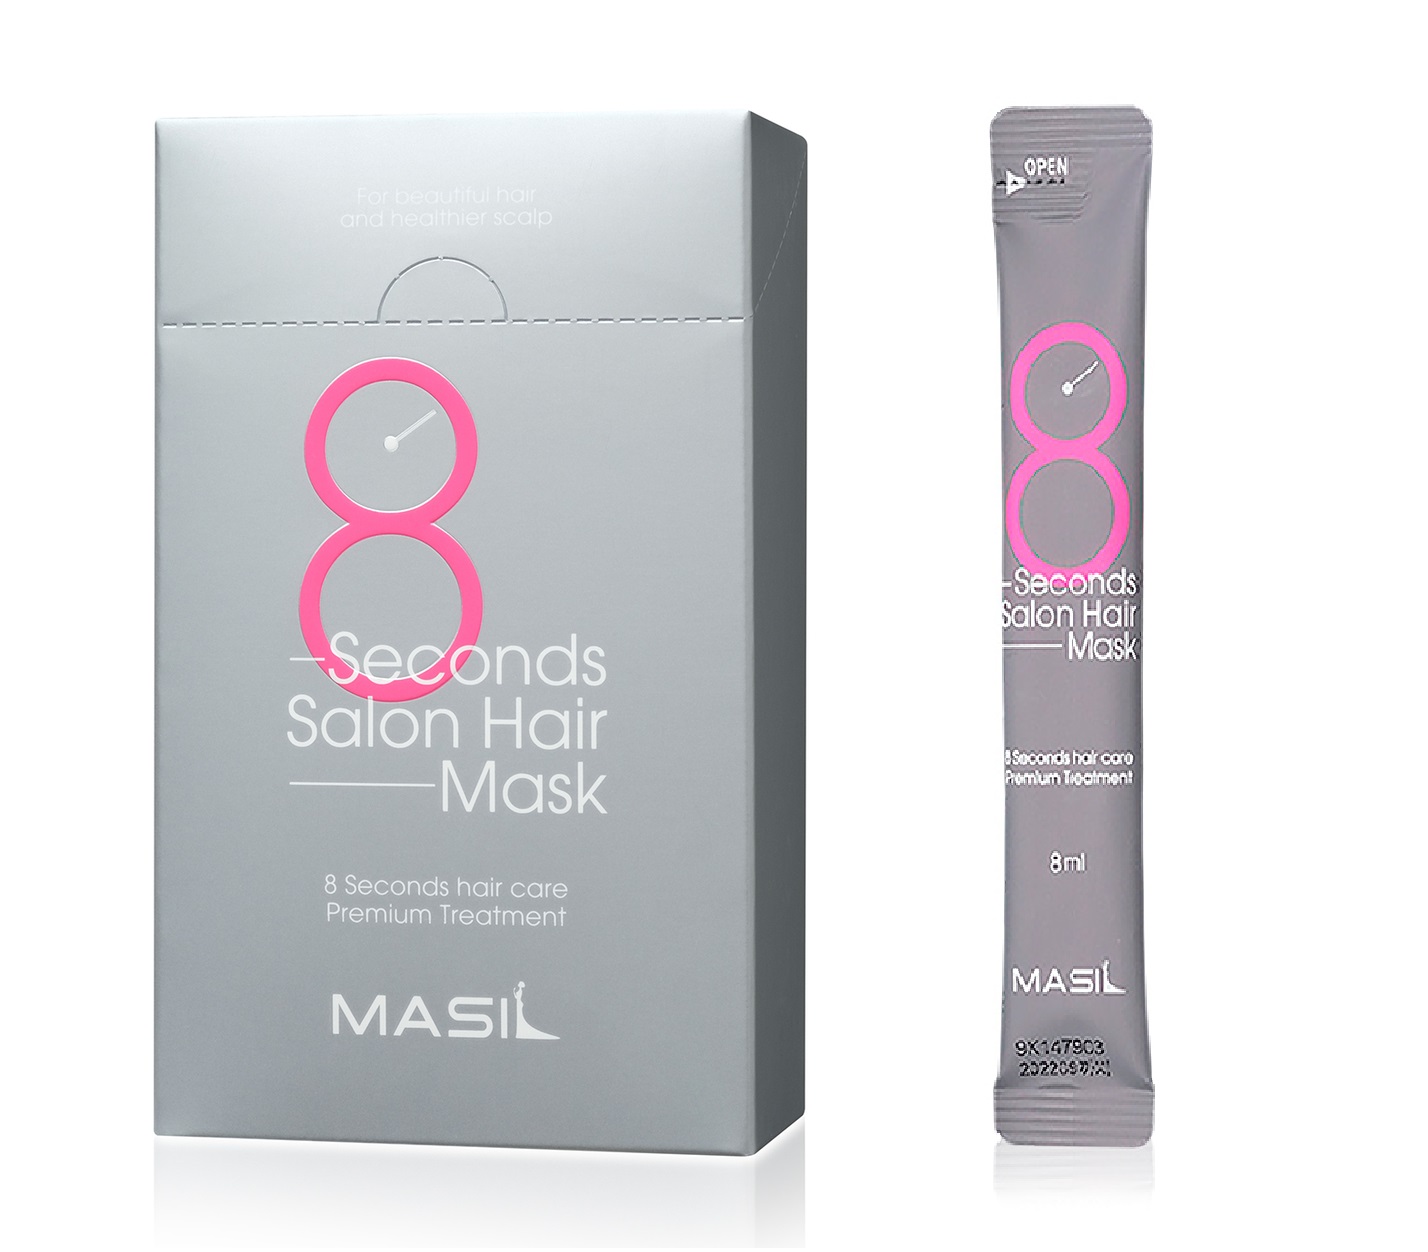 Корейская маска для волос 8 секунд. Masil маска для волос салонный эффект за 8 секунд, 8 мл*20 шт. Masil маска 8 секунд. Маска 8 секунд Корея. Masil маска для волос салонный эффект за 8 секунд - 8 seconds Salon hair Mask, 100мл.